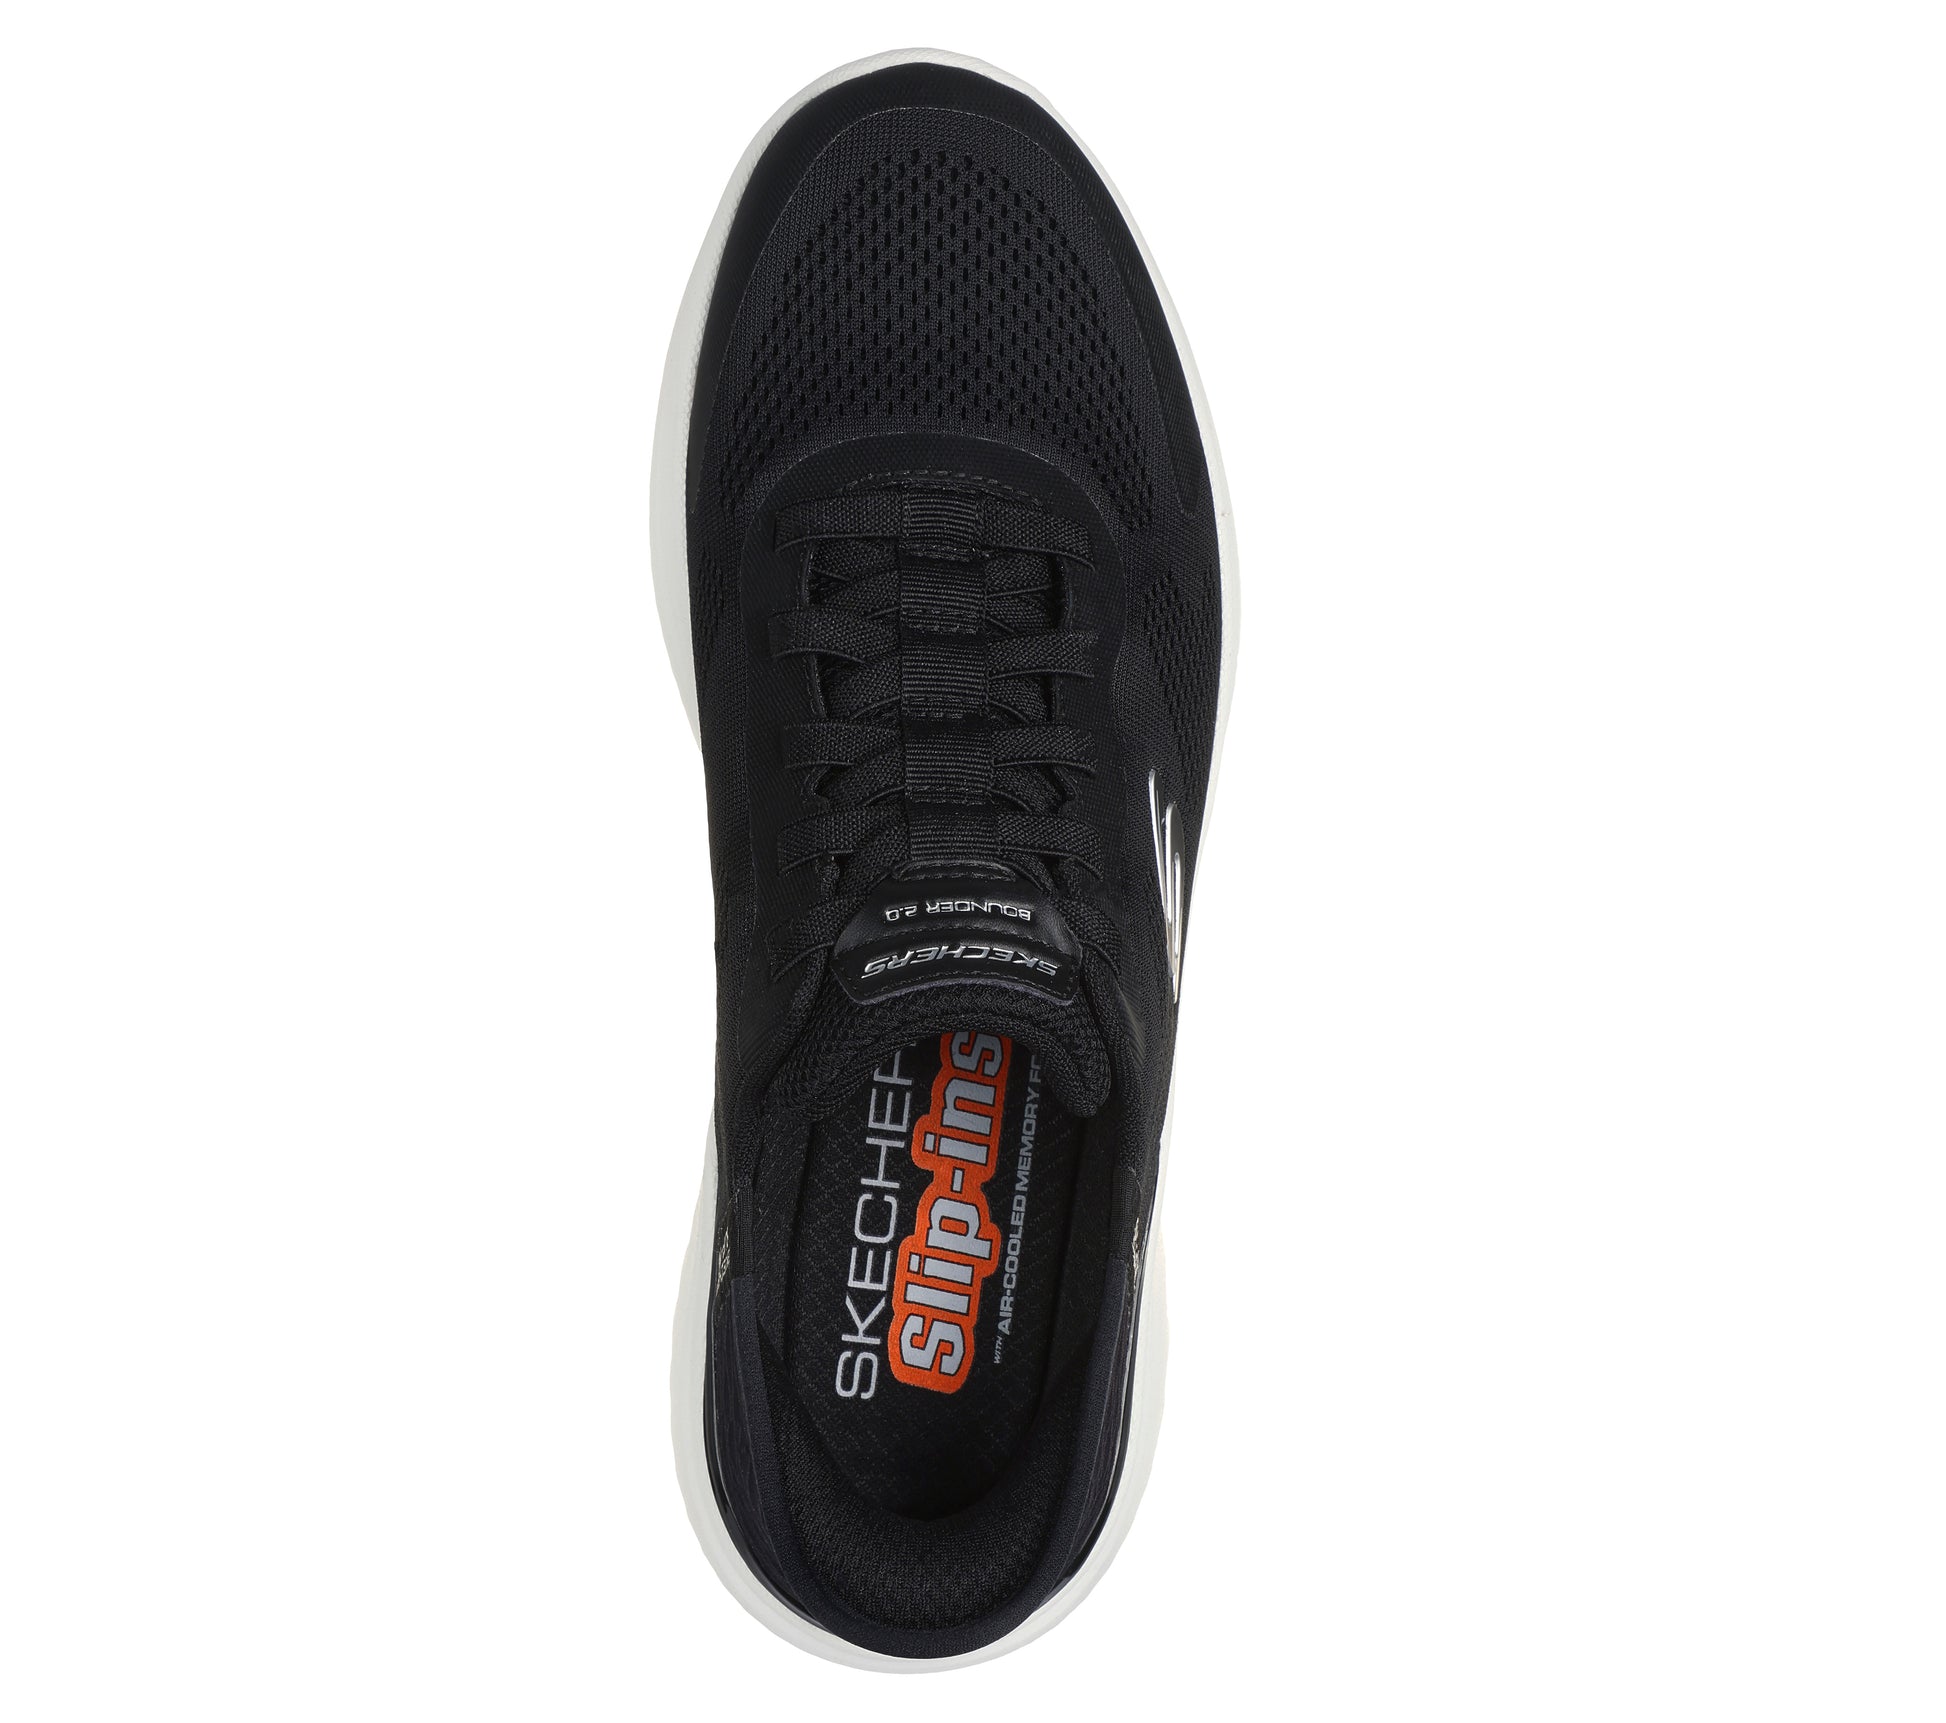 נעלי ספורט לגברים Slip-Ins Sport Bounder 2.0 בצבע שחור ולבן